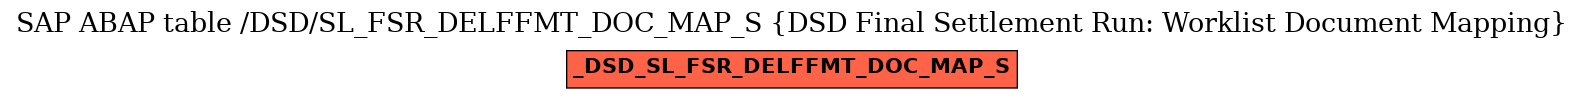 E-R Diagram for table /DSD/SL_FSR_DELFFMT_DOC_MAP_S (DSD Final Settlement Run: Worklist Document Mapping)